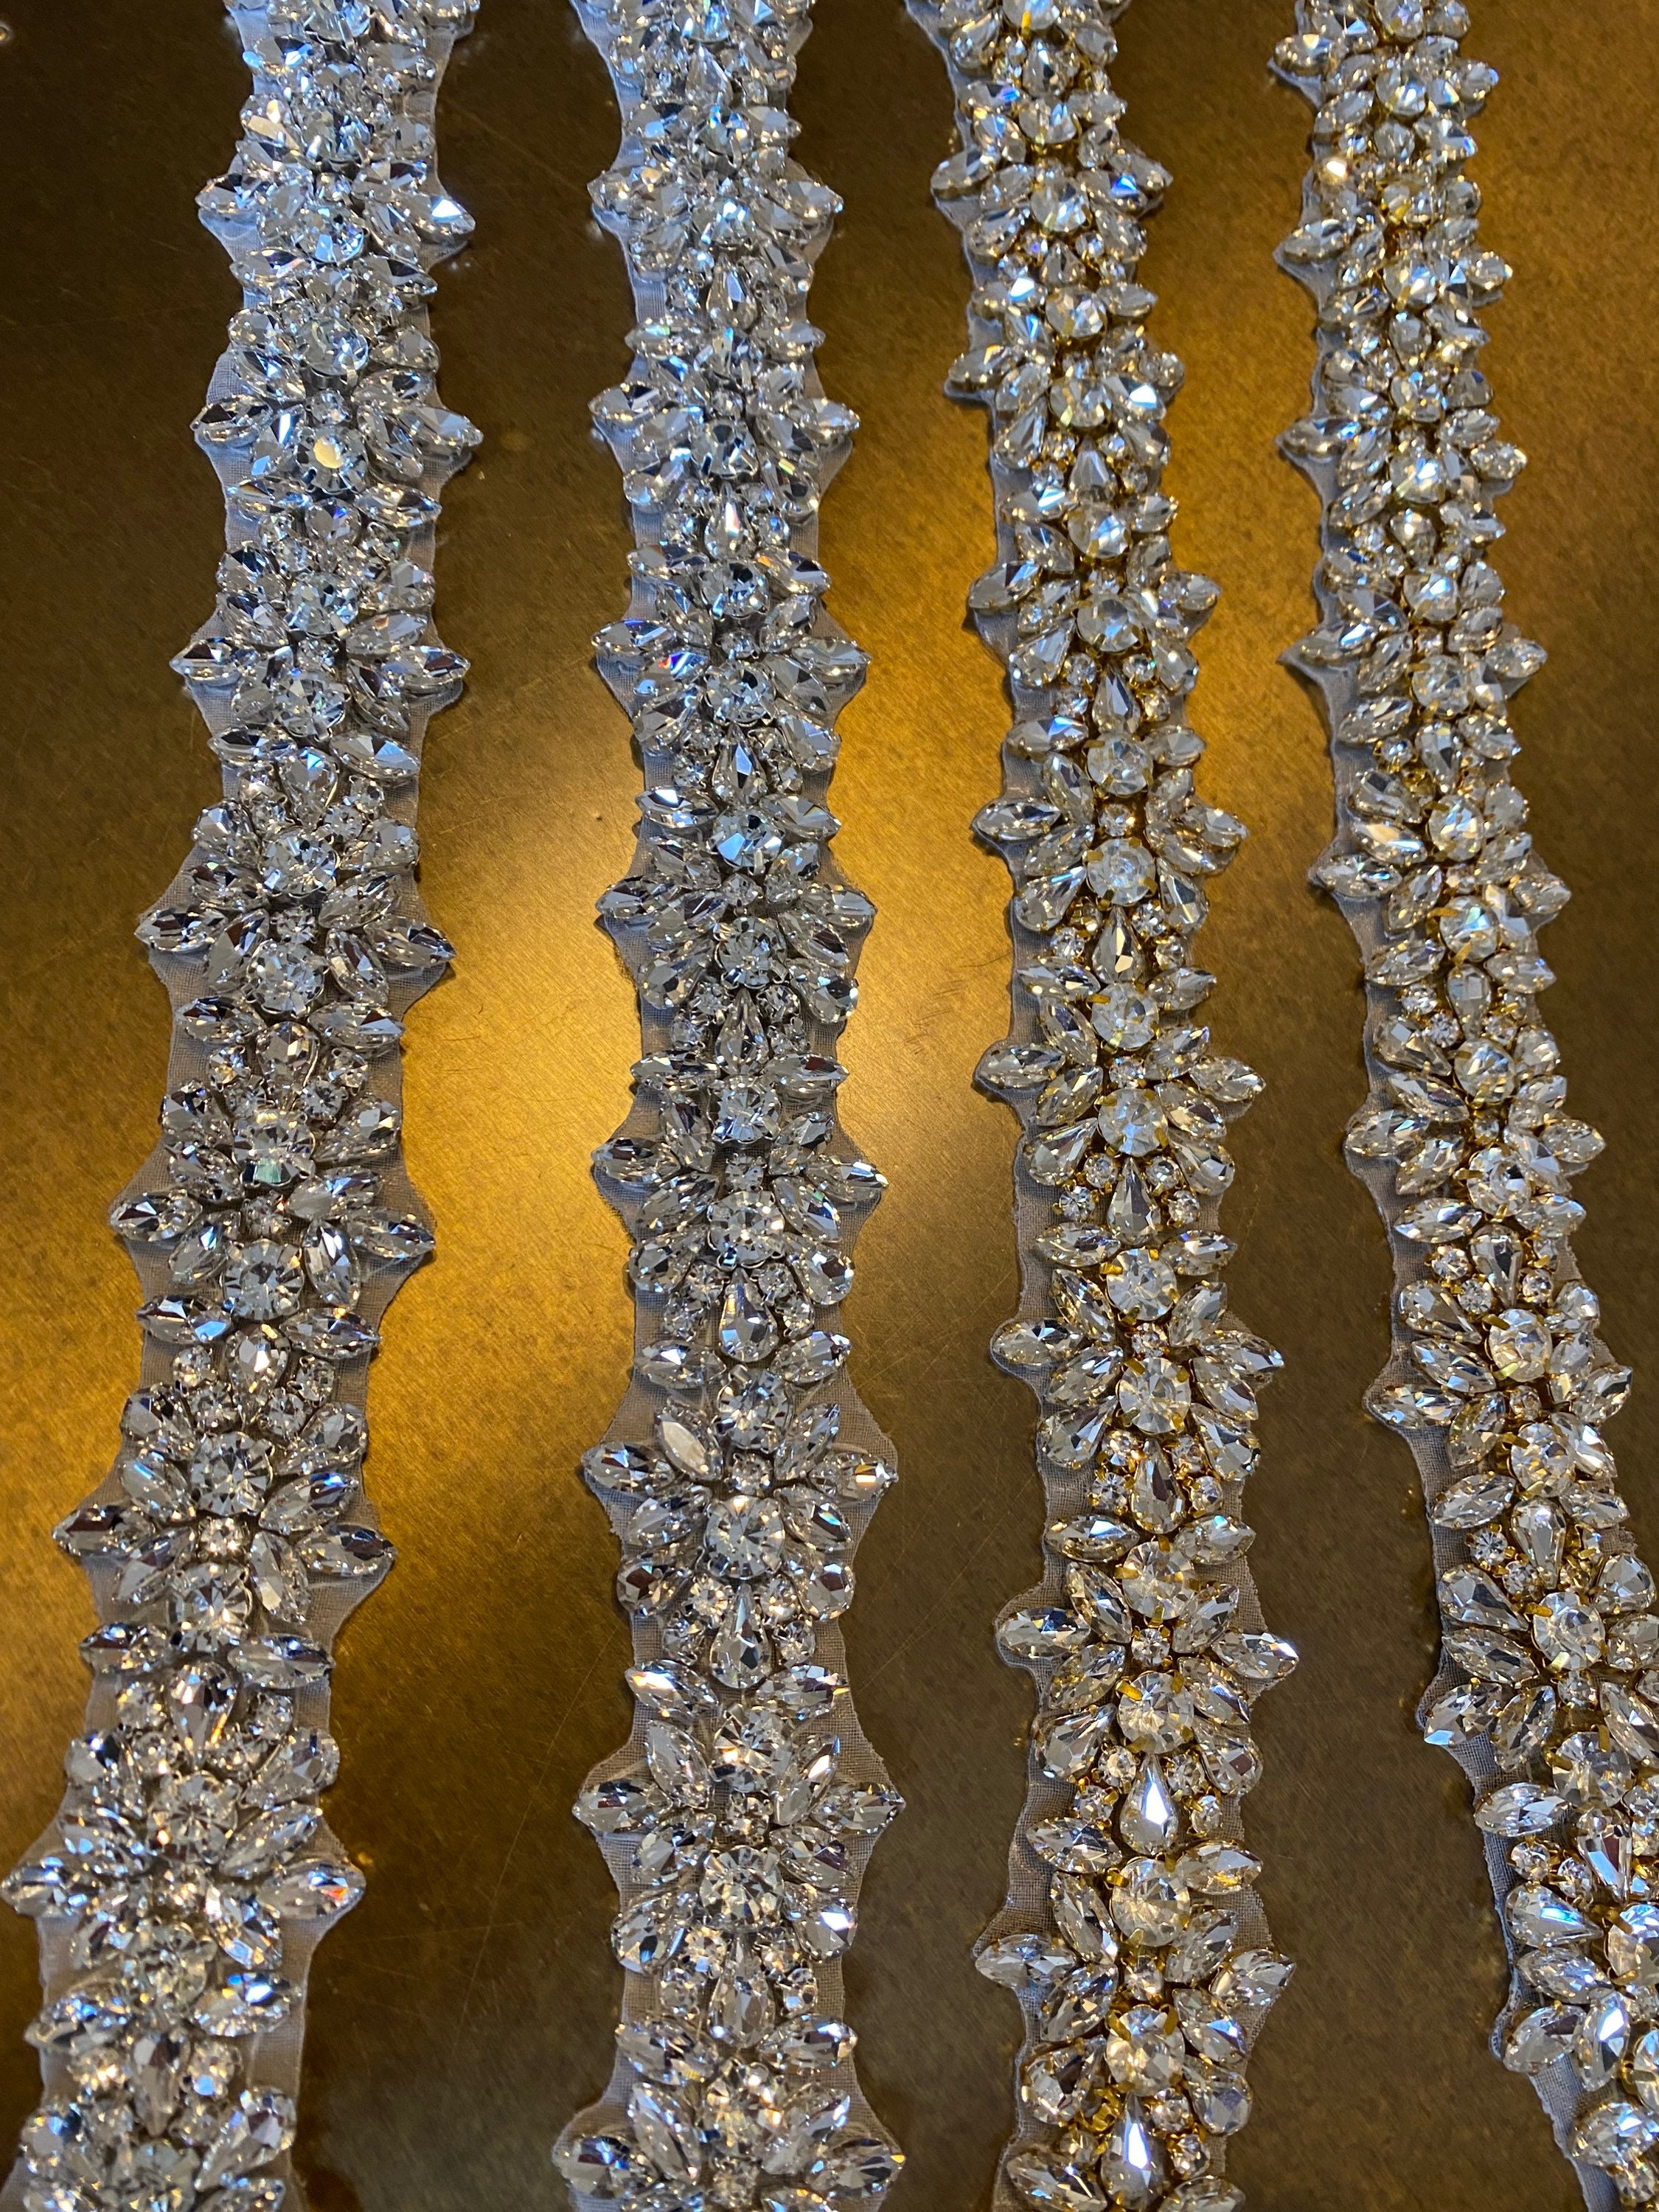 4200 piezas de diamantes de imitación planos para manualidades, cristales  redondos para ropa 1.5 mm - 4.8 mm, 6 tamaños